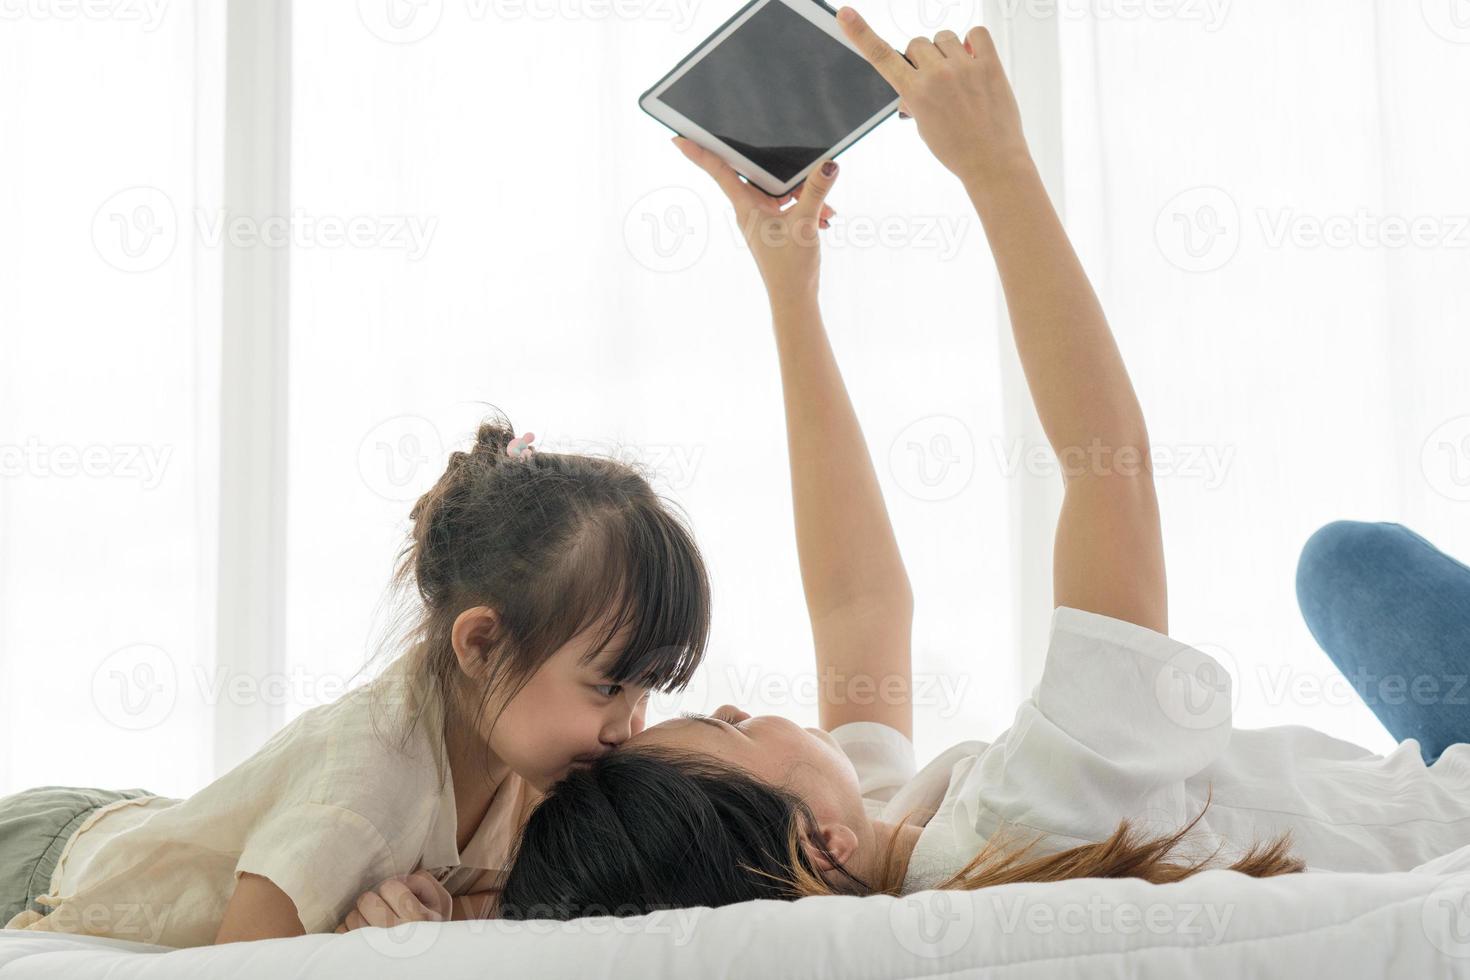 criança asiática beijando a mãe dela enquanto a mãe usando o tablet para tirar foto deles na cama. conceito de família unida